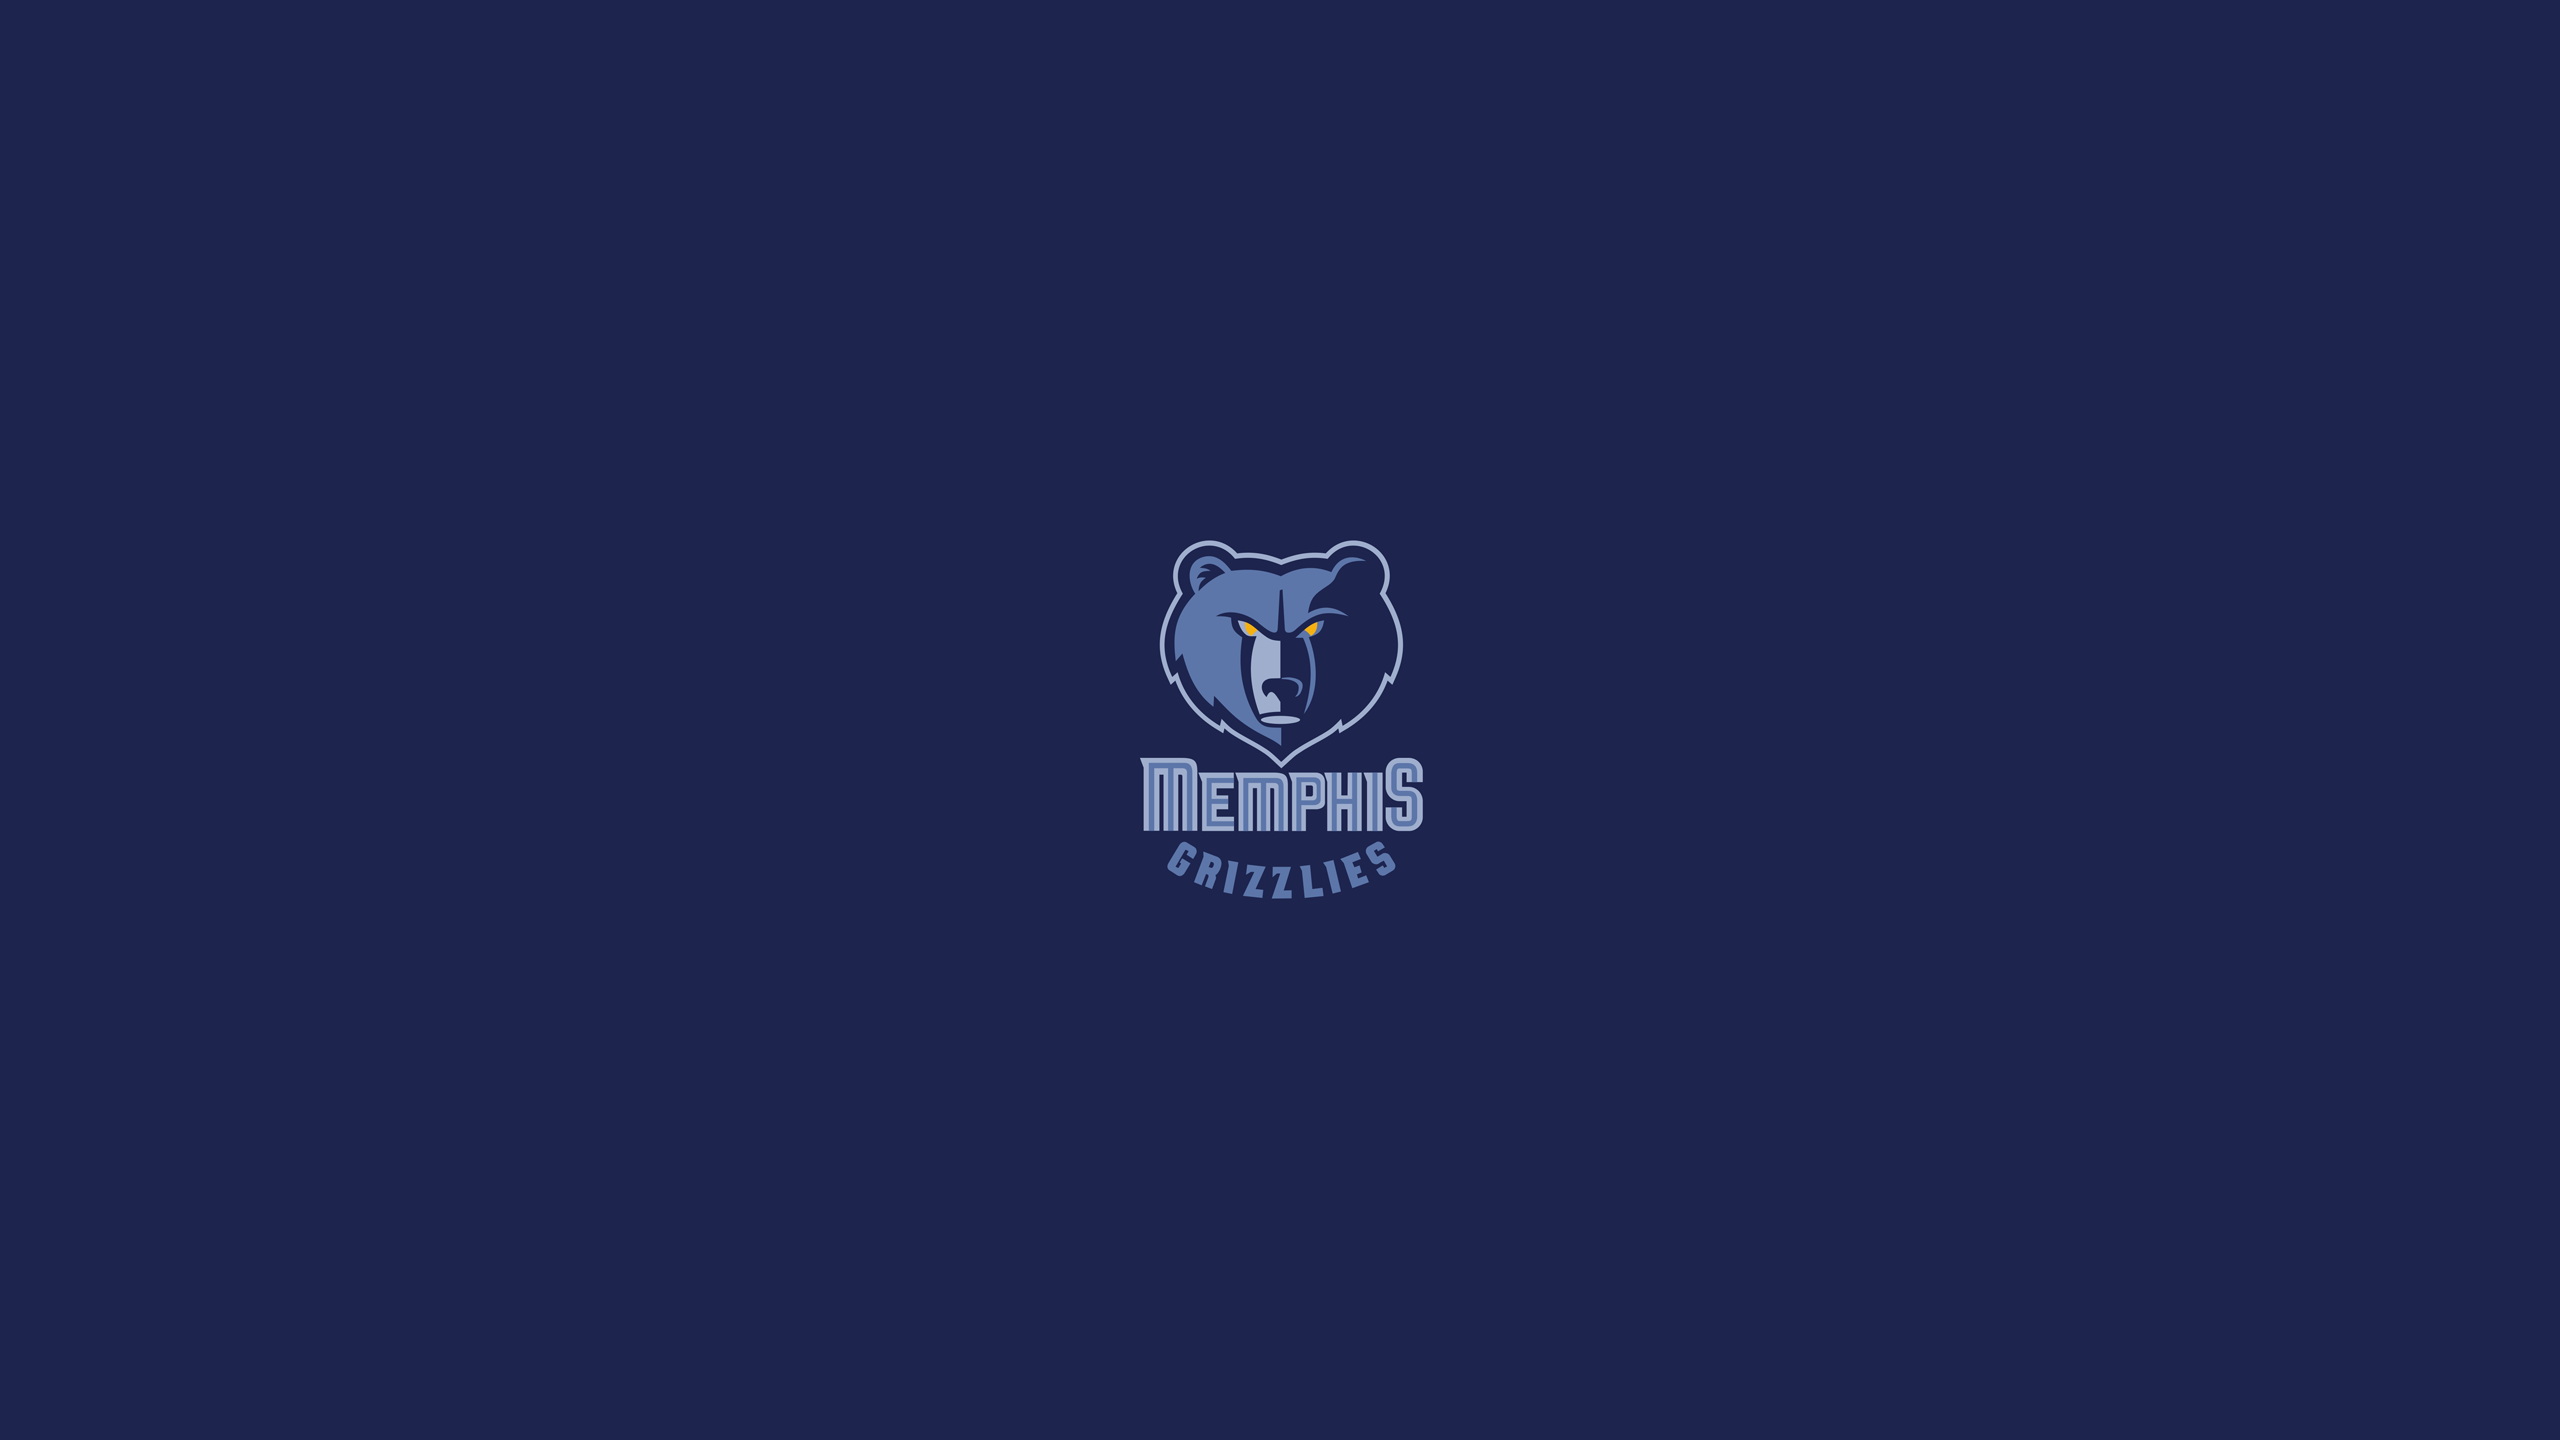 Memphis Grizzlies Nba Basketball Wallpaper Background